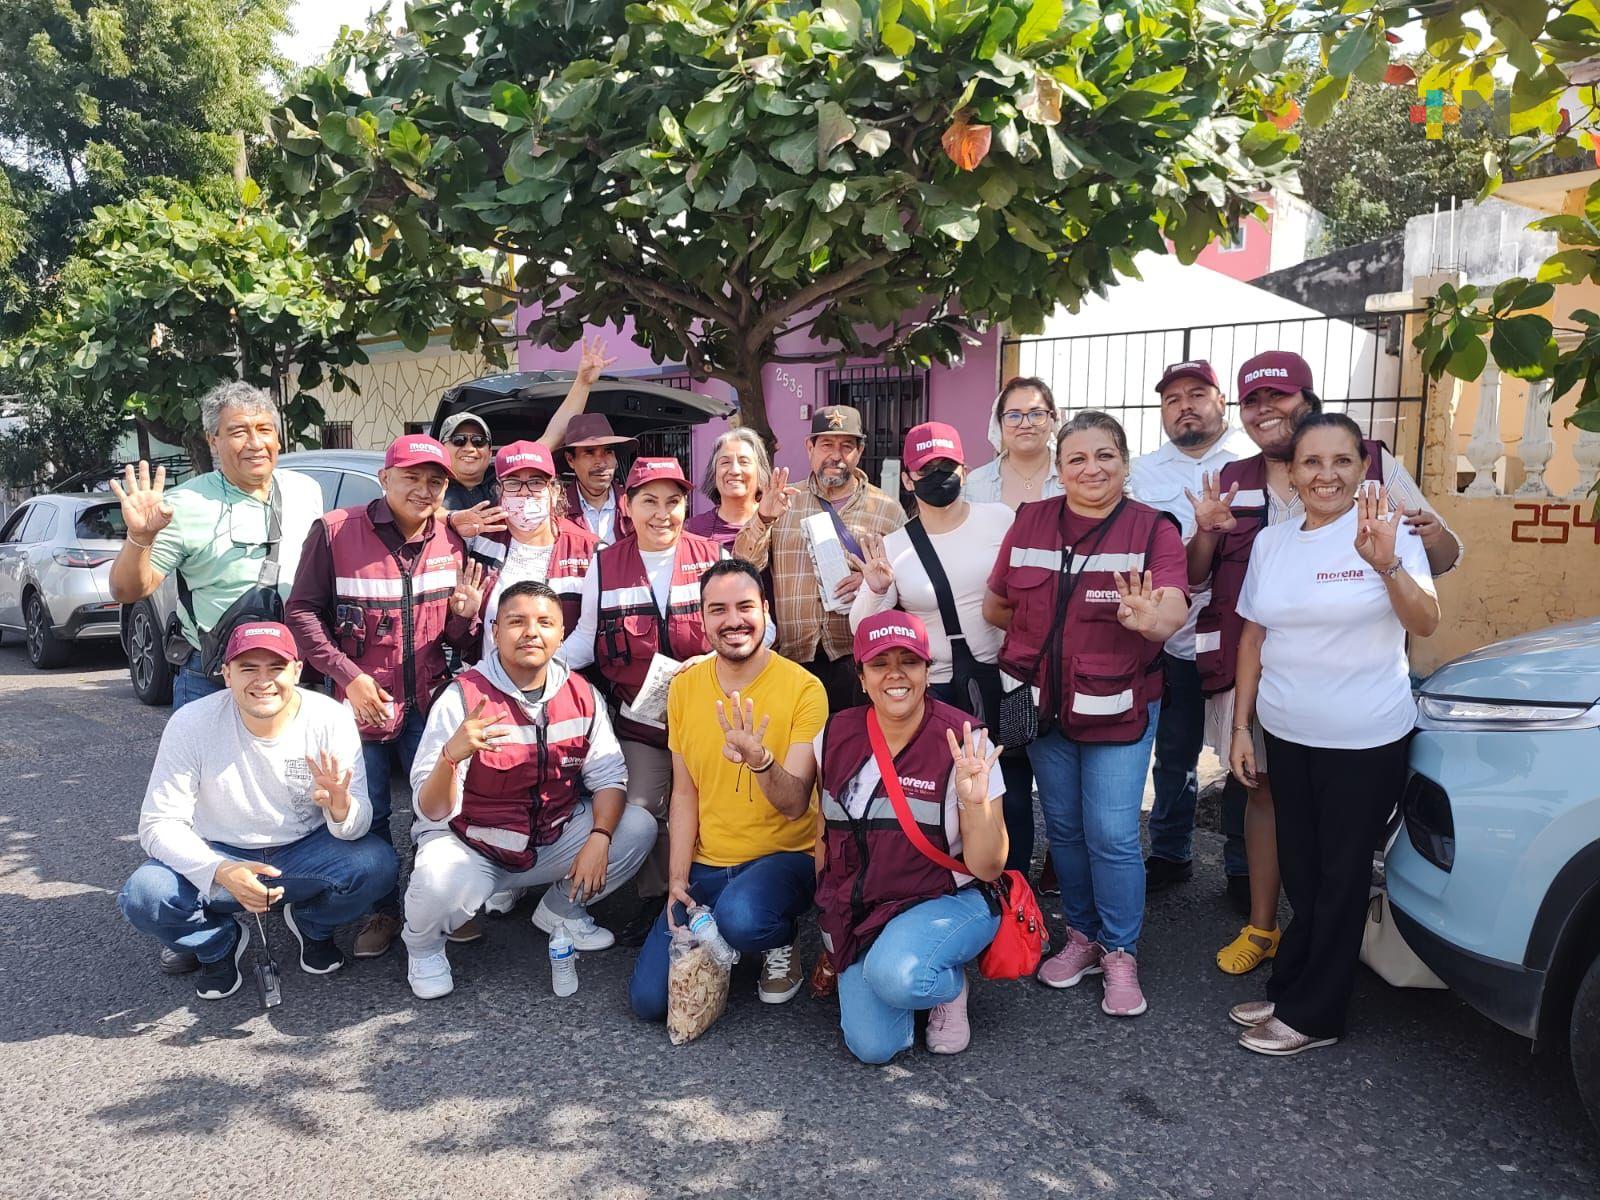 Continúan brigadas morenistas recorriendo el municipio de Veracruz